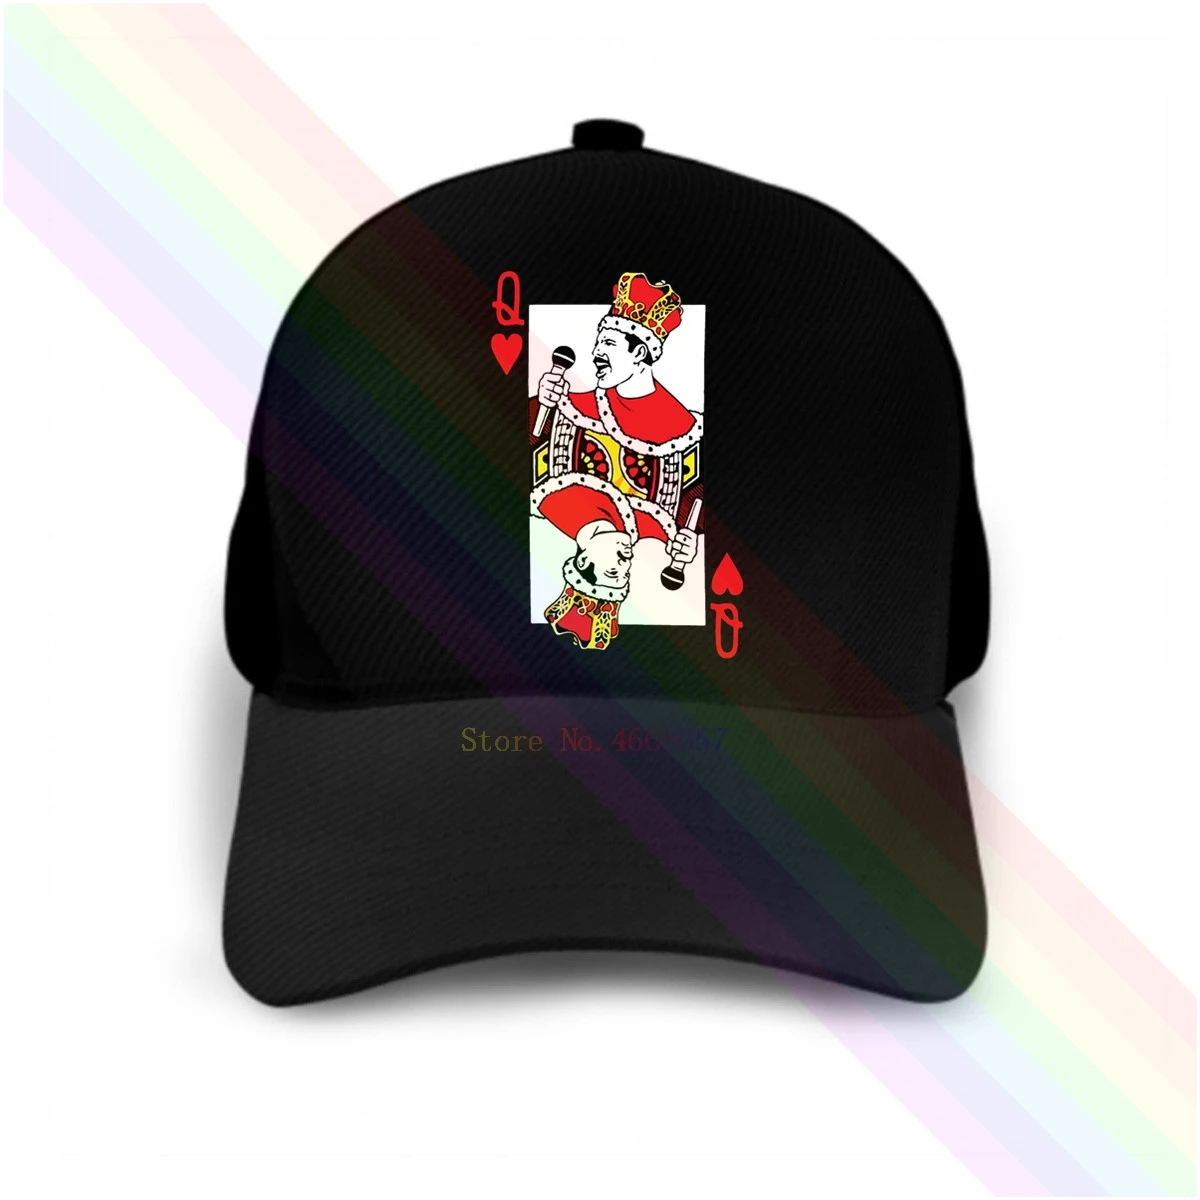 Фото Queen Freddie Mercury Q Joker 2020 новейшая черная популярная бейсболка головные уборы унисекс |